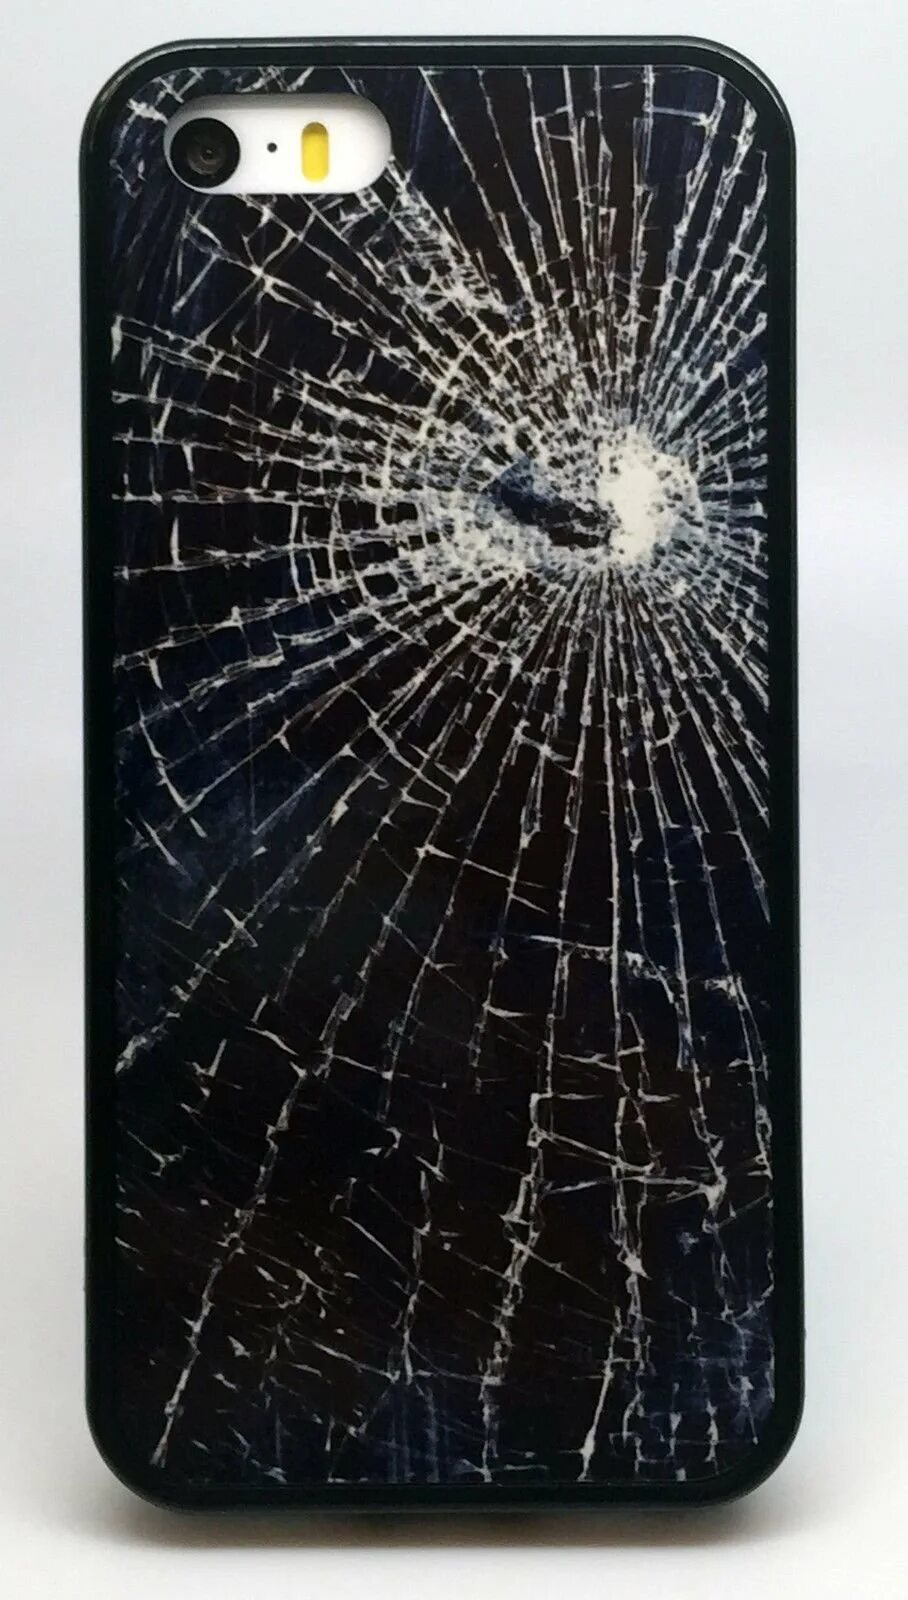 Разбила новый телефон. Кабуто разбит экран айфона. Разбитый айфон. Разбился экран смартфона. Сломанный экран.